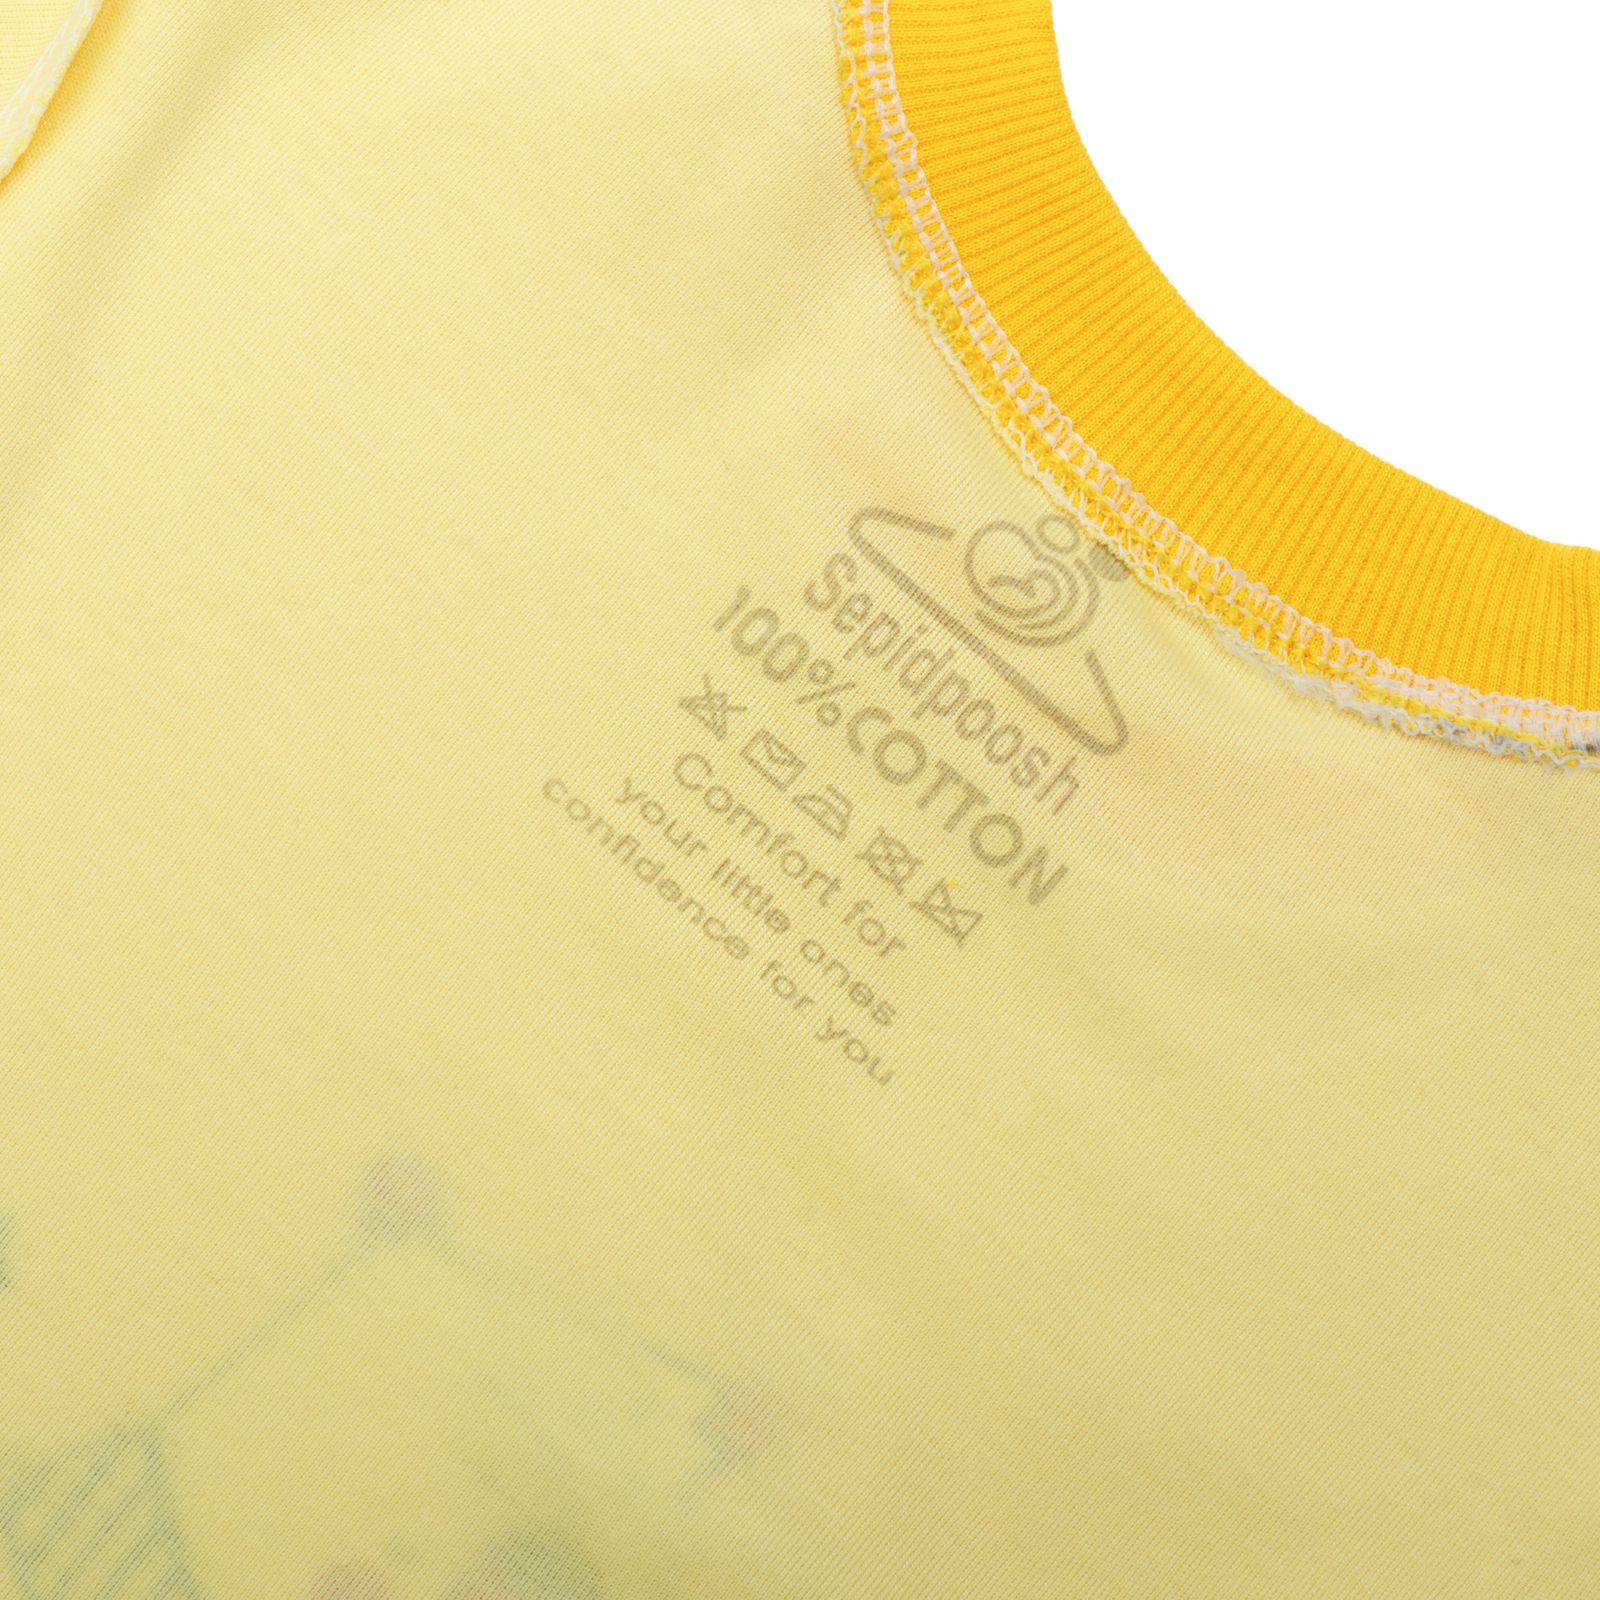 ست تی شرت آستین بلند و شلوار بچگانه سپیدپوش مدل Sleep کد 1402351 -  - 3